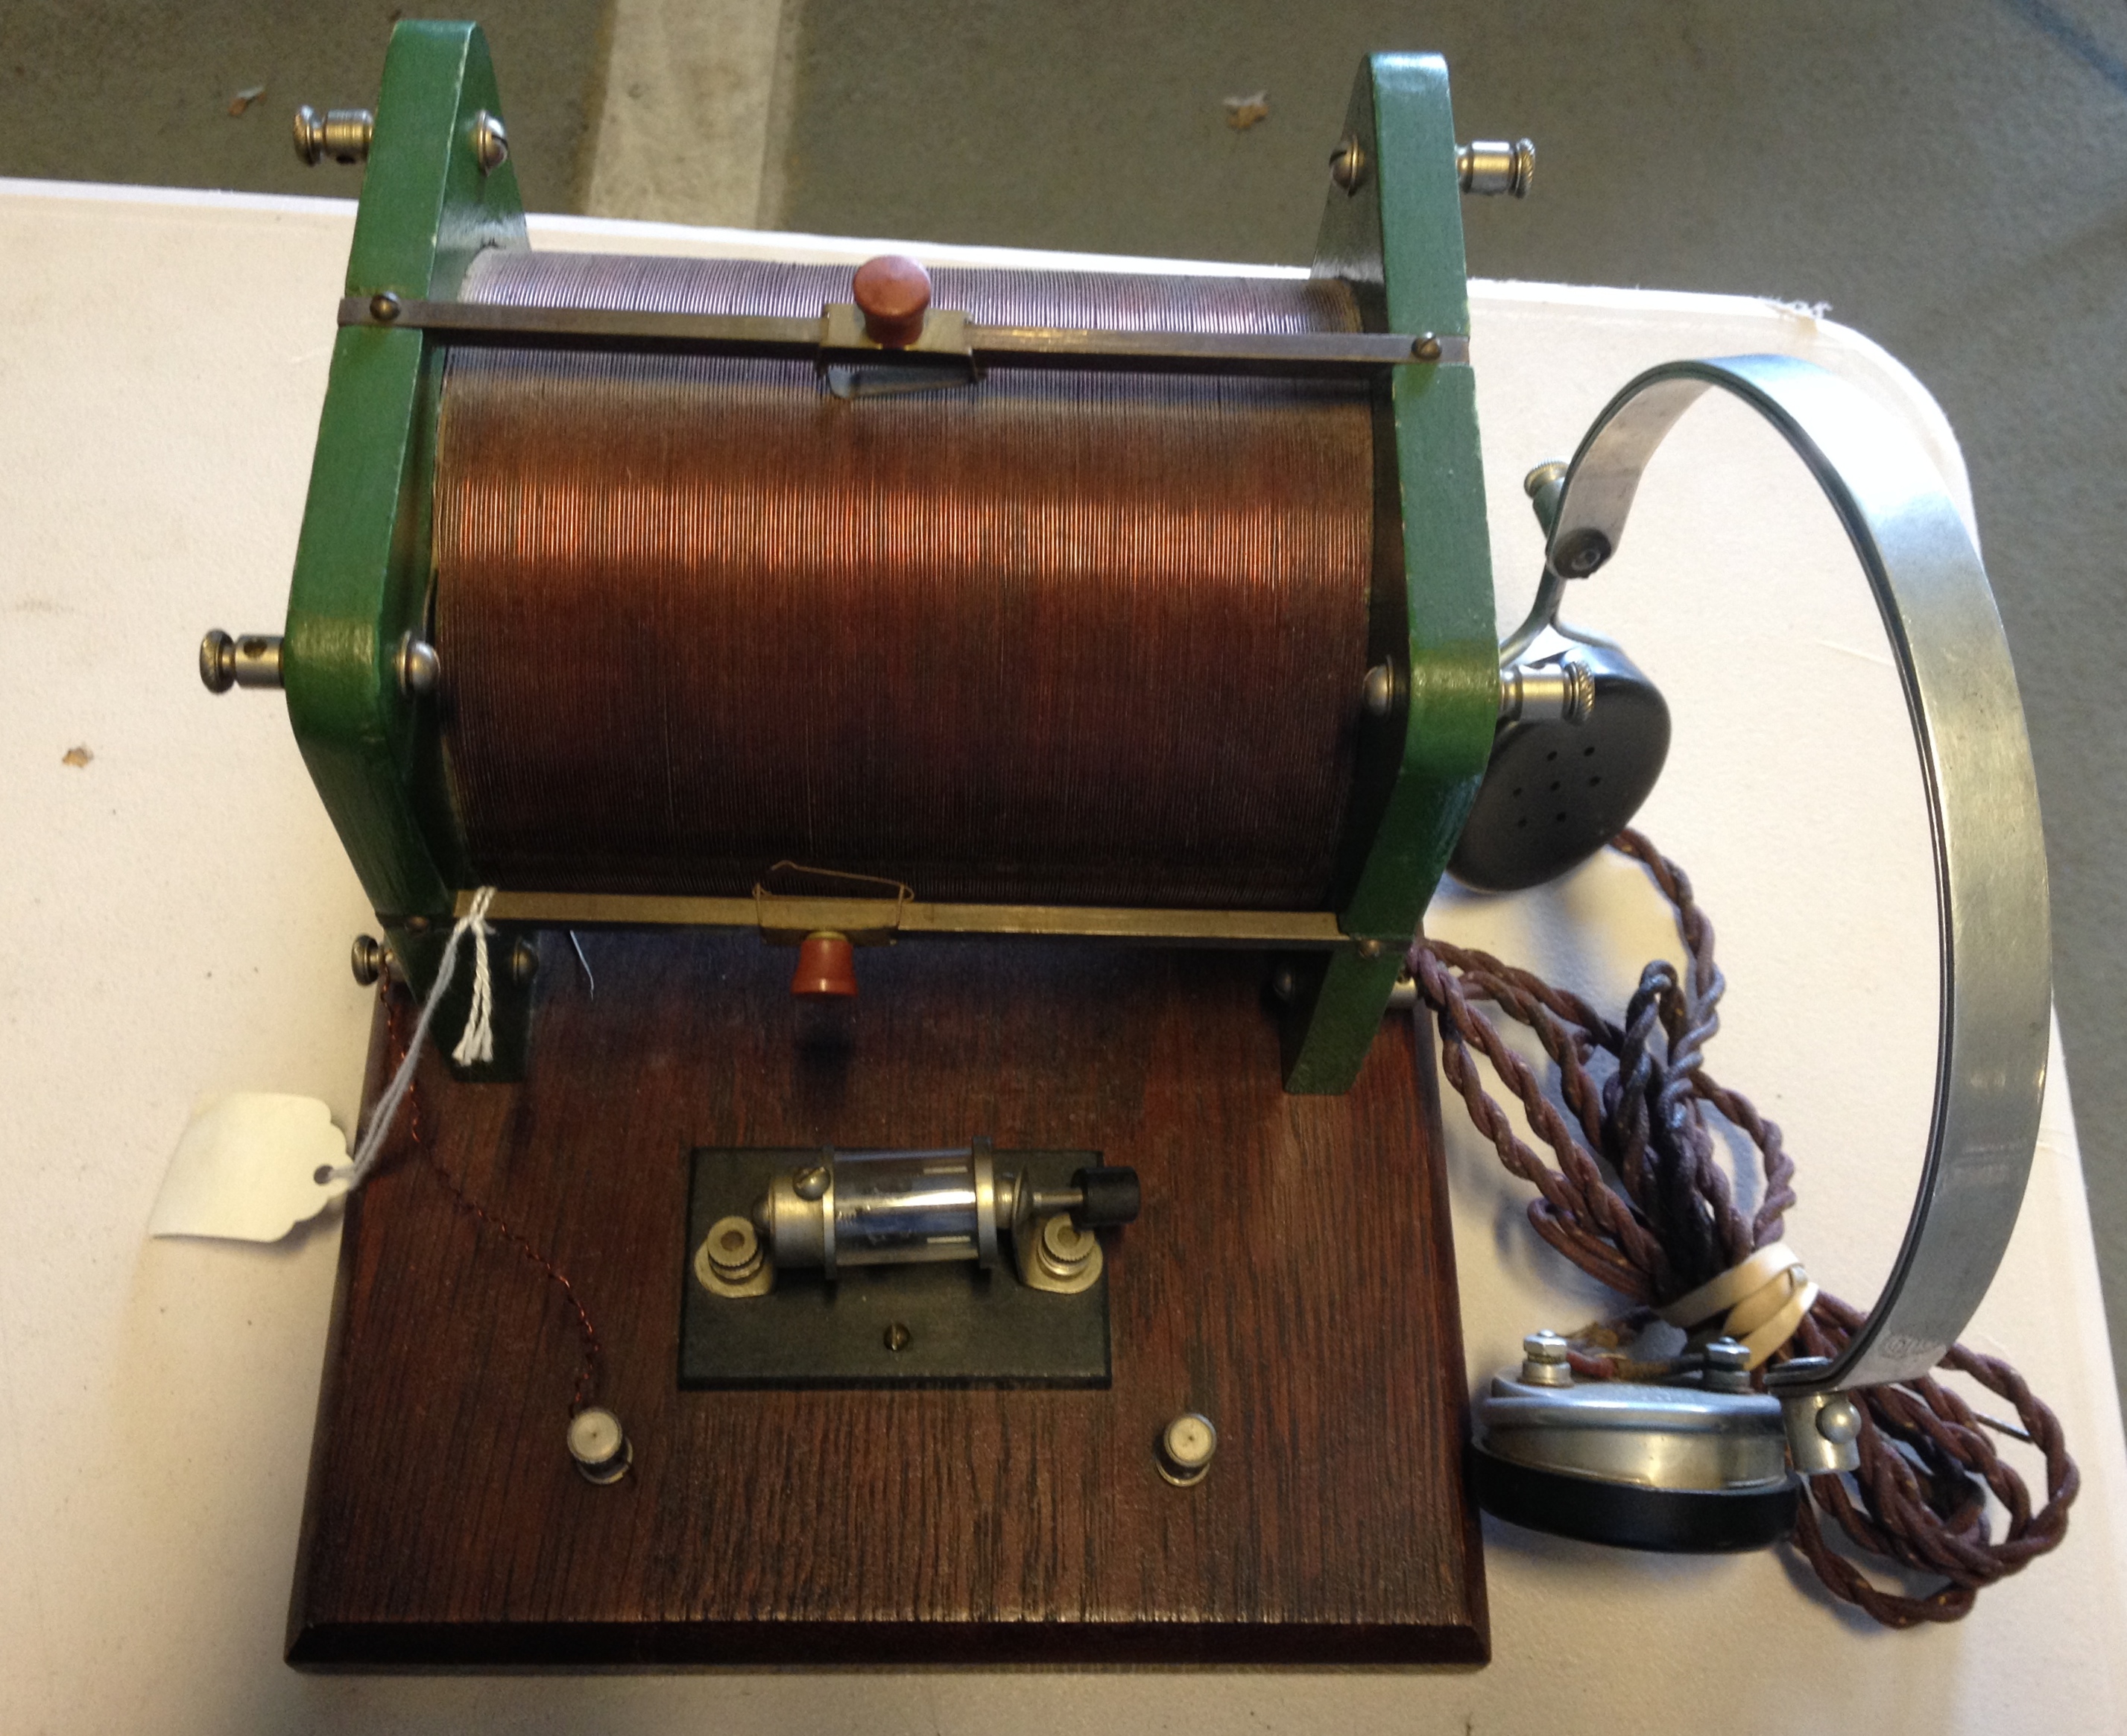 Un ejemplo de una radio galena, que le enseño a construir su padre, sin pilas y sin conectar a la corriente